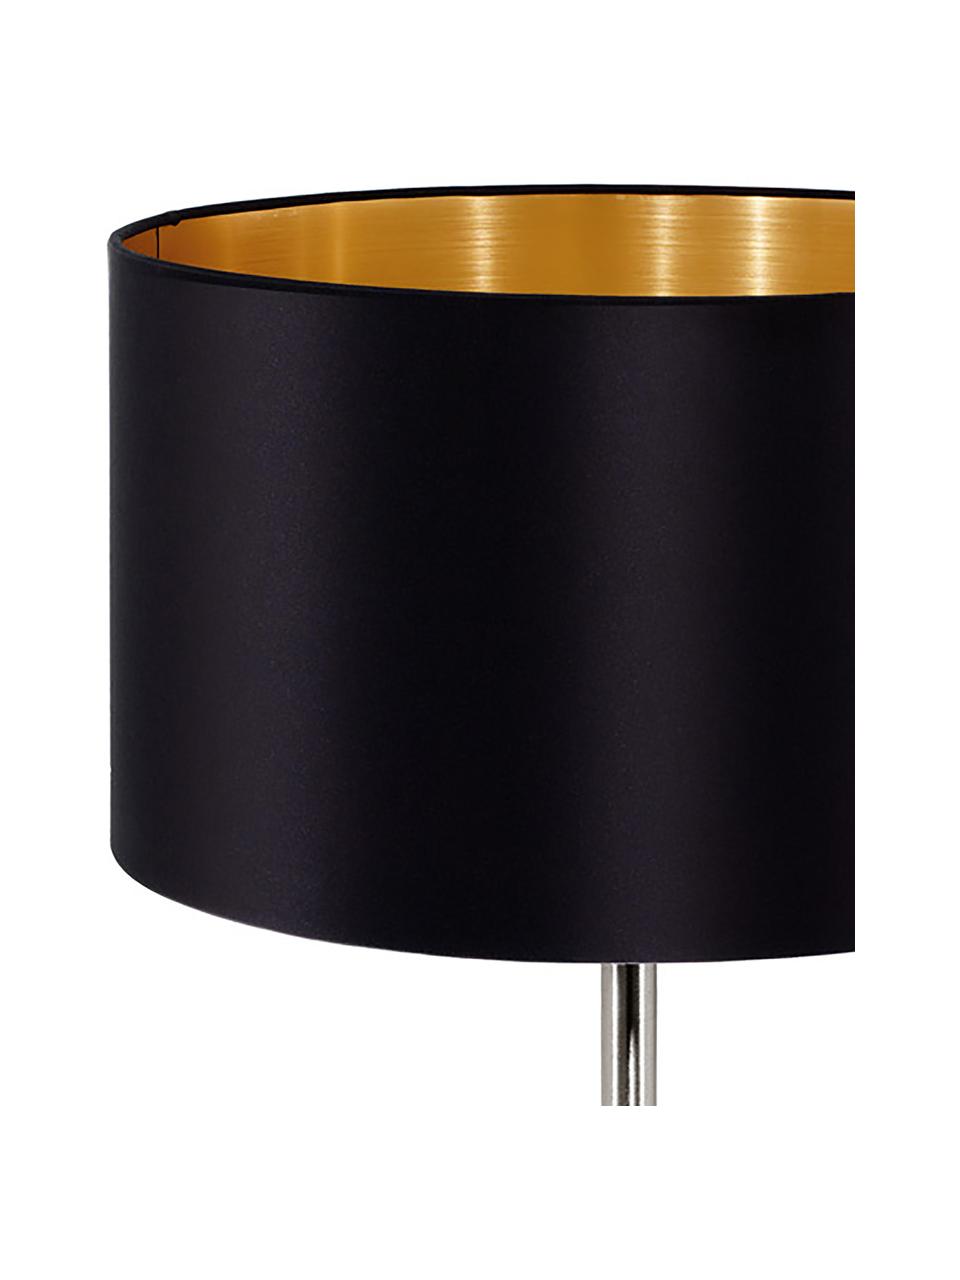 Tafellamp Jamie met goudkleurige decoratie, Lampvoet: vernikkeld metaal, Zwart, zilverkleurig, Ø 23 x H 42 cm